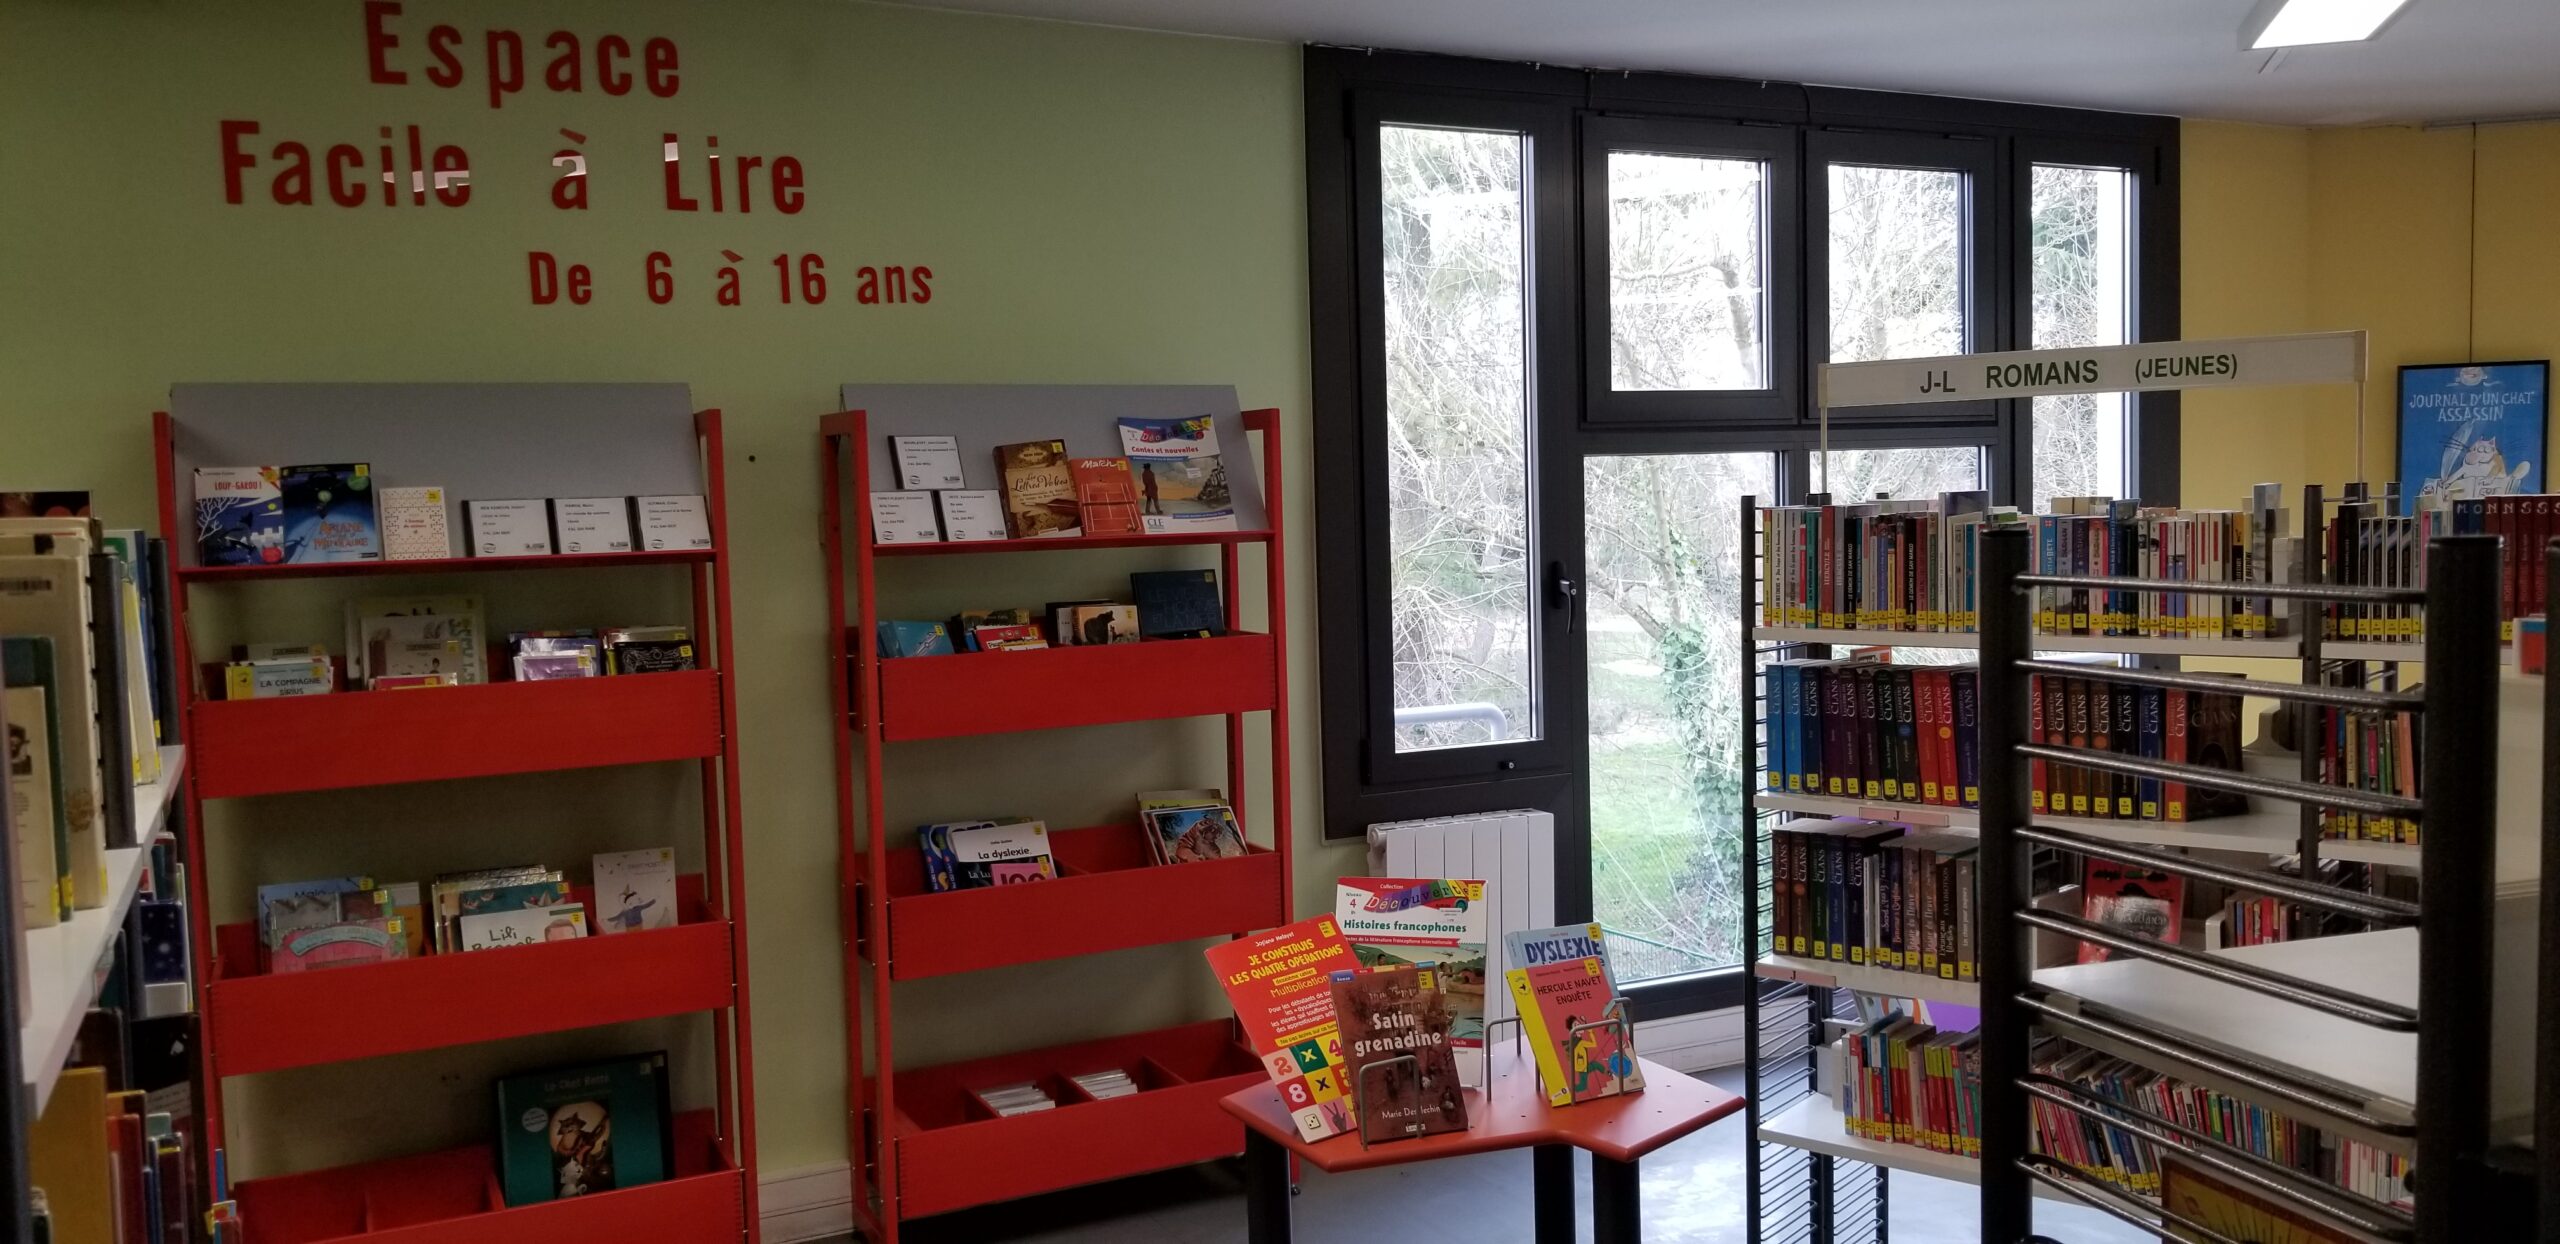 Photo de l'Espace Facile à lire avec mobilier et signalétique rouge qui le rend visible au sein de la bibliothèque. La signalétique indique : Espace Facile à Lire de 6 à 16 ans.